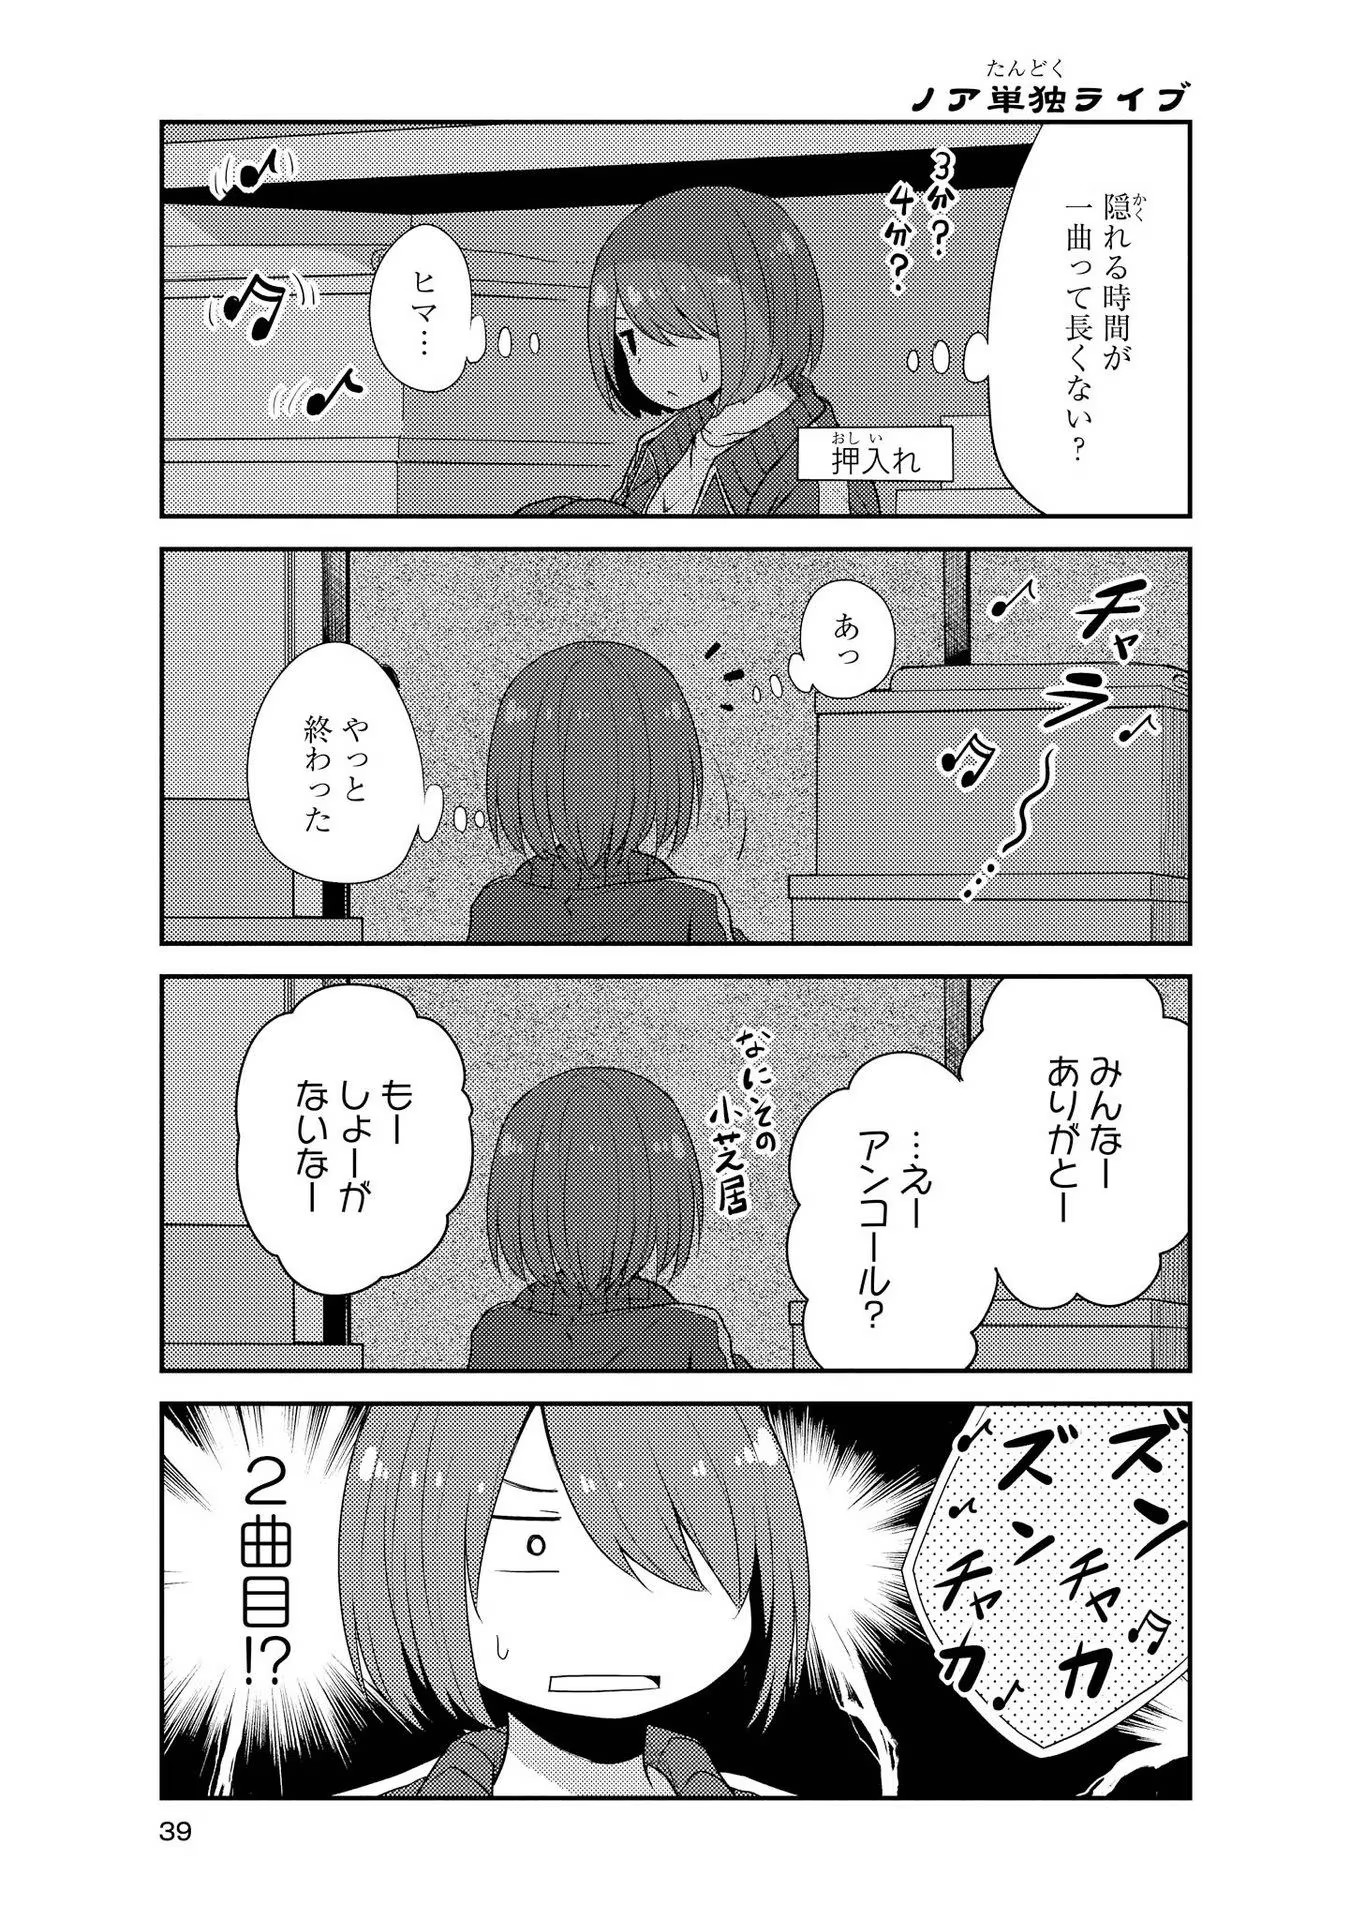 Watashi ni Tenshi ga Maiorita! - Chapter 13 - Page 5